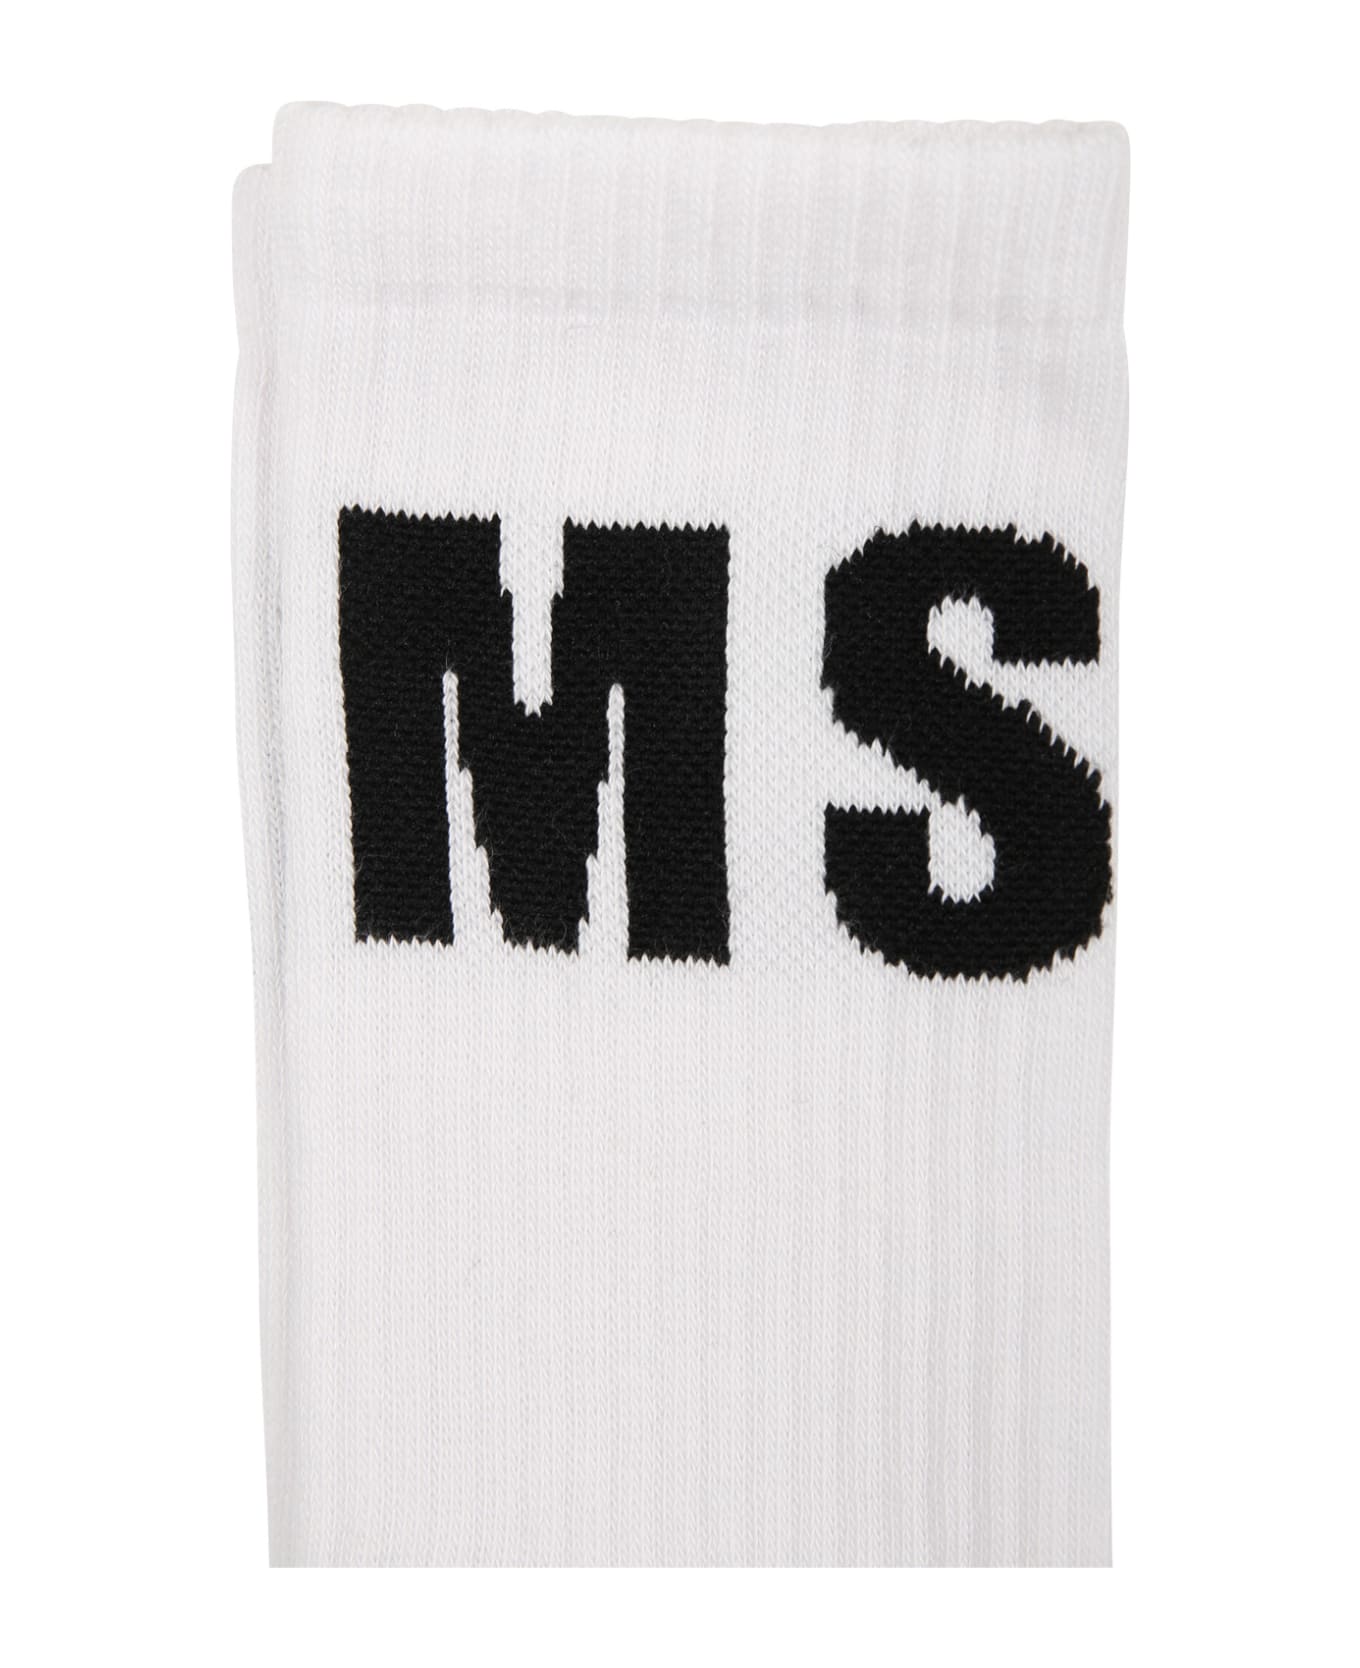 MSGM White Socks For Kids With Logo - White